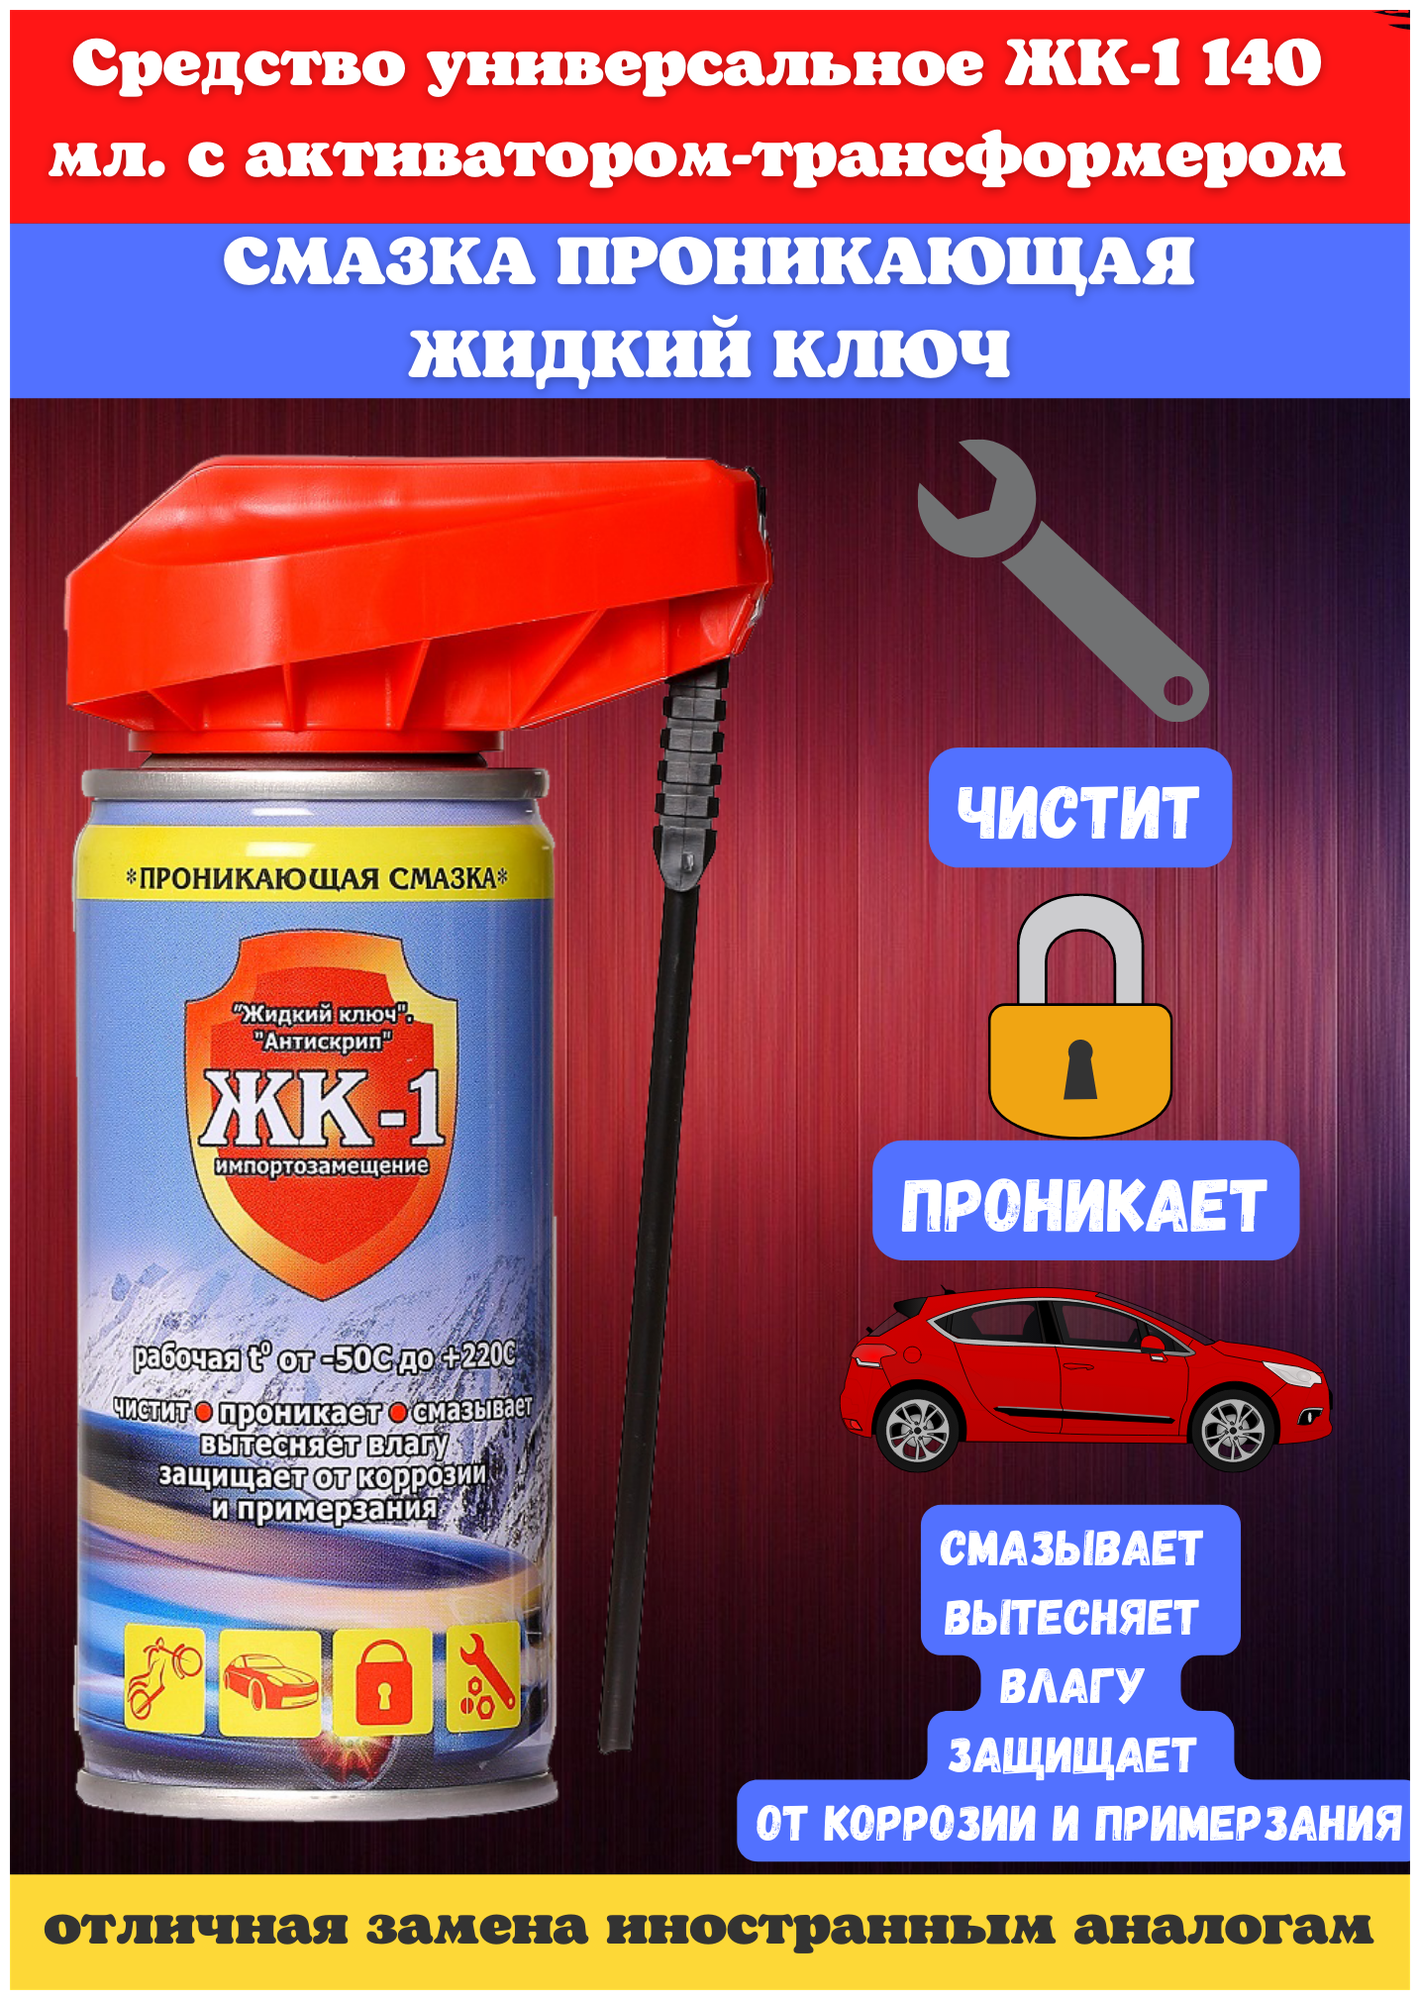 Смазка ЖК-1 многоцелевая универсальная проникающая ЖК-1 с распылителем, 0.14 л — купить в интернет-магазине по низкой цене на Яндекс Маркете